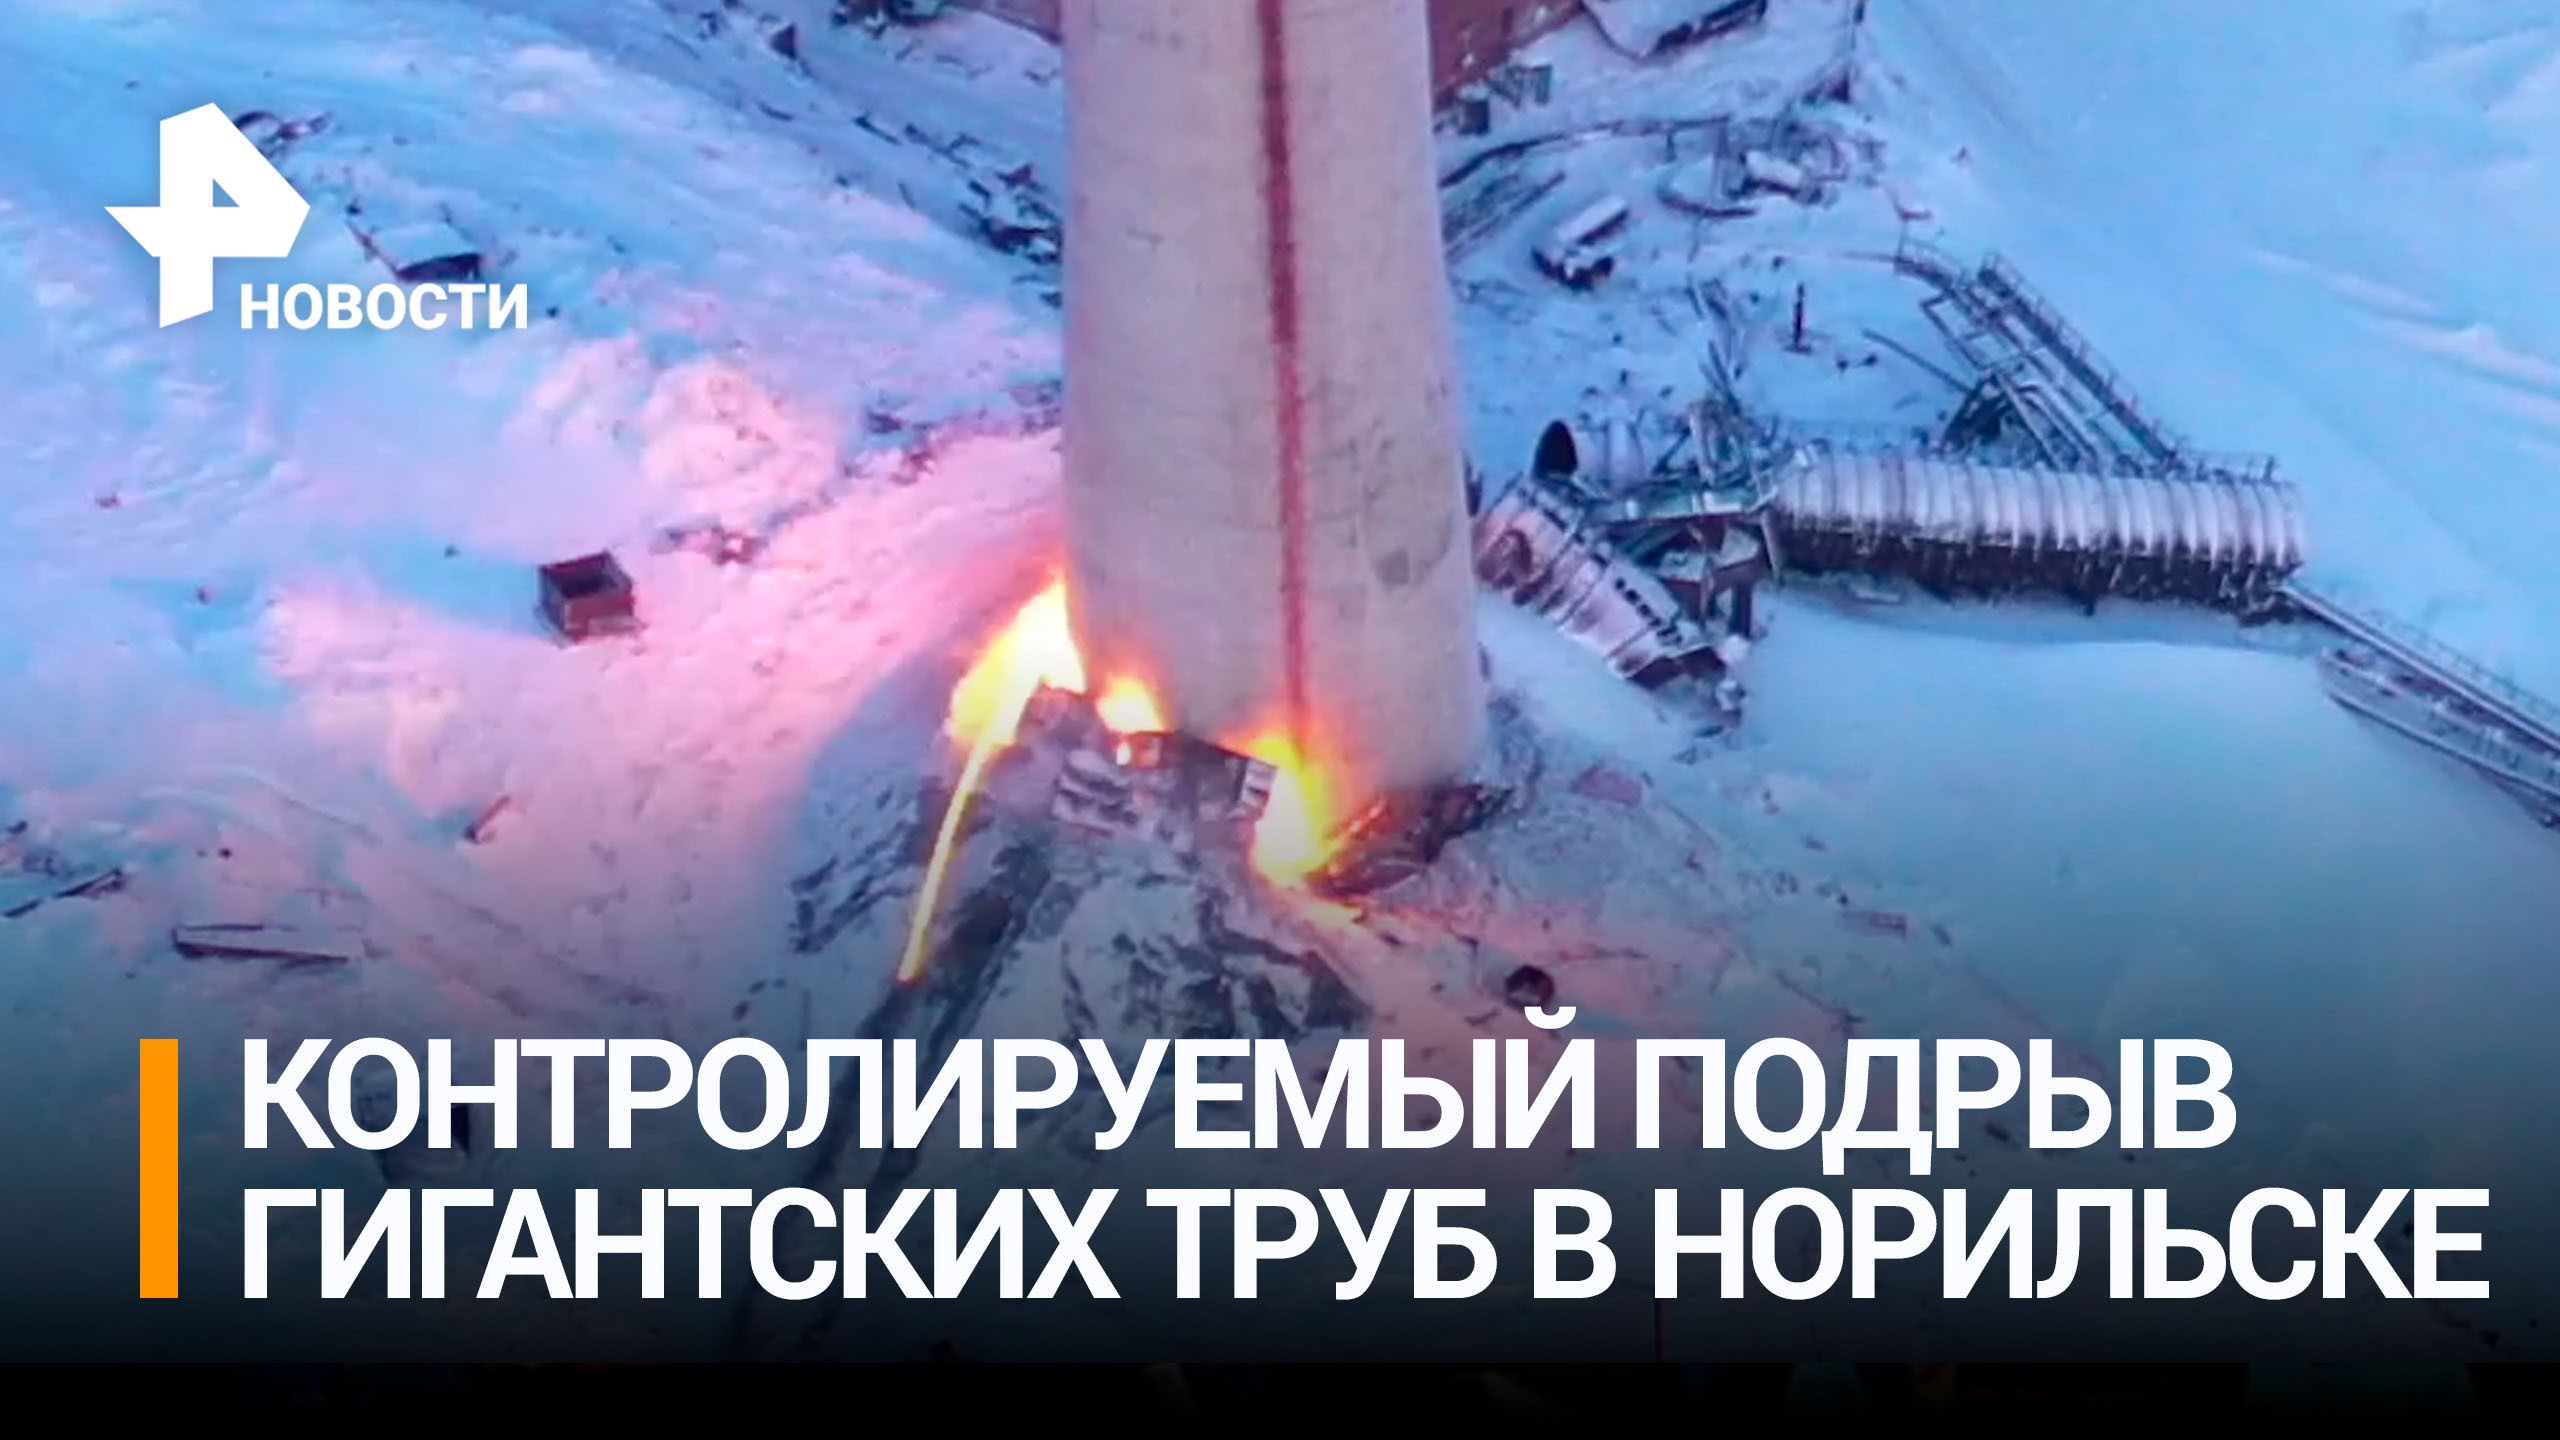 180-метровые трубы снесли с помощью контролируемого взрыва на заводе в Норильске / РЕН Новости